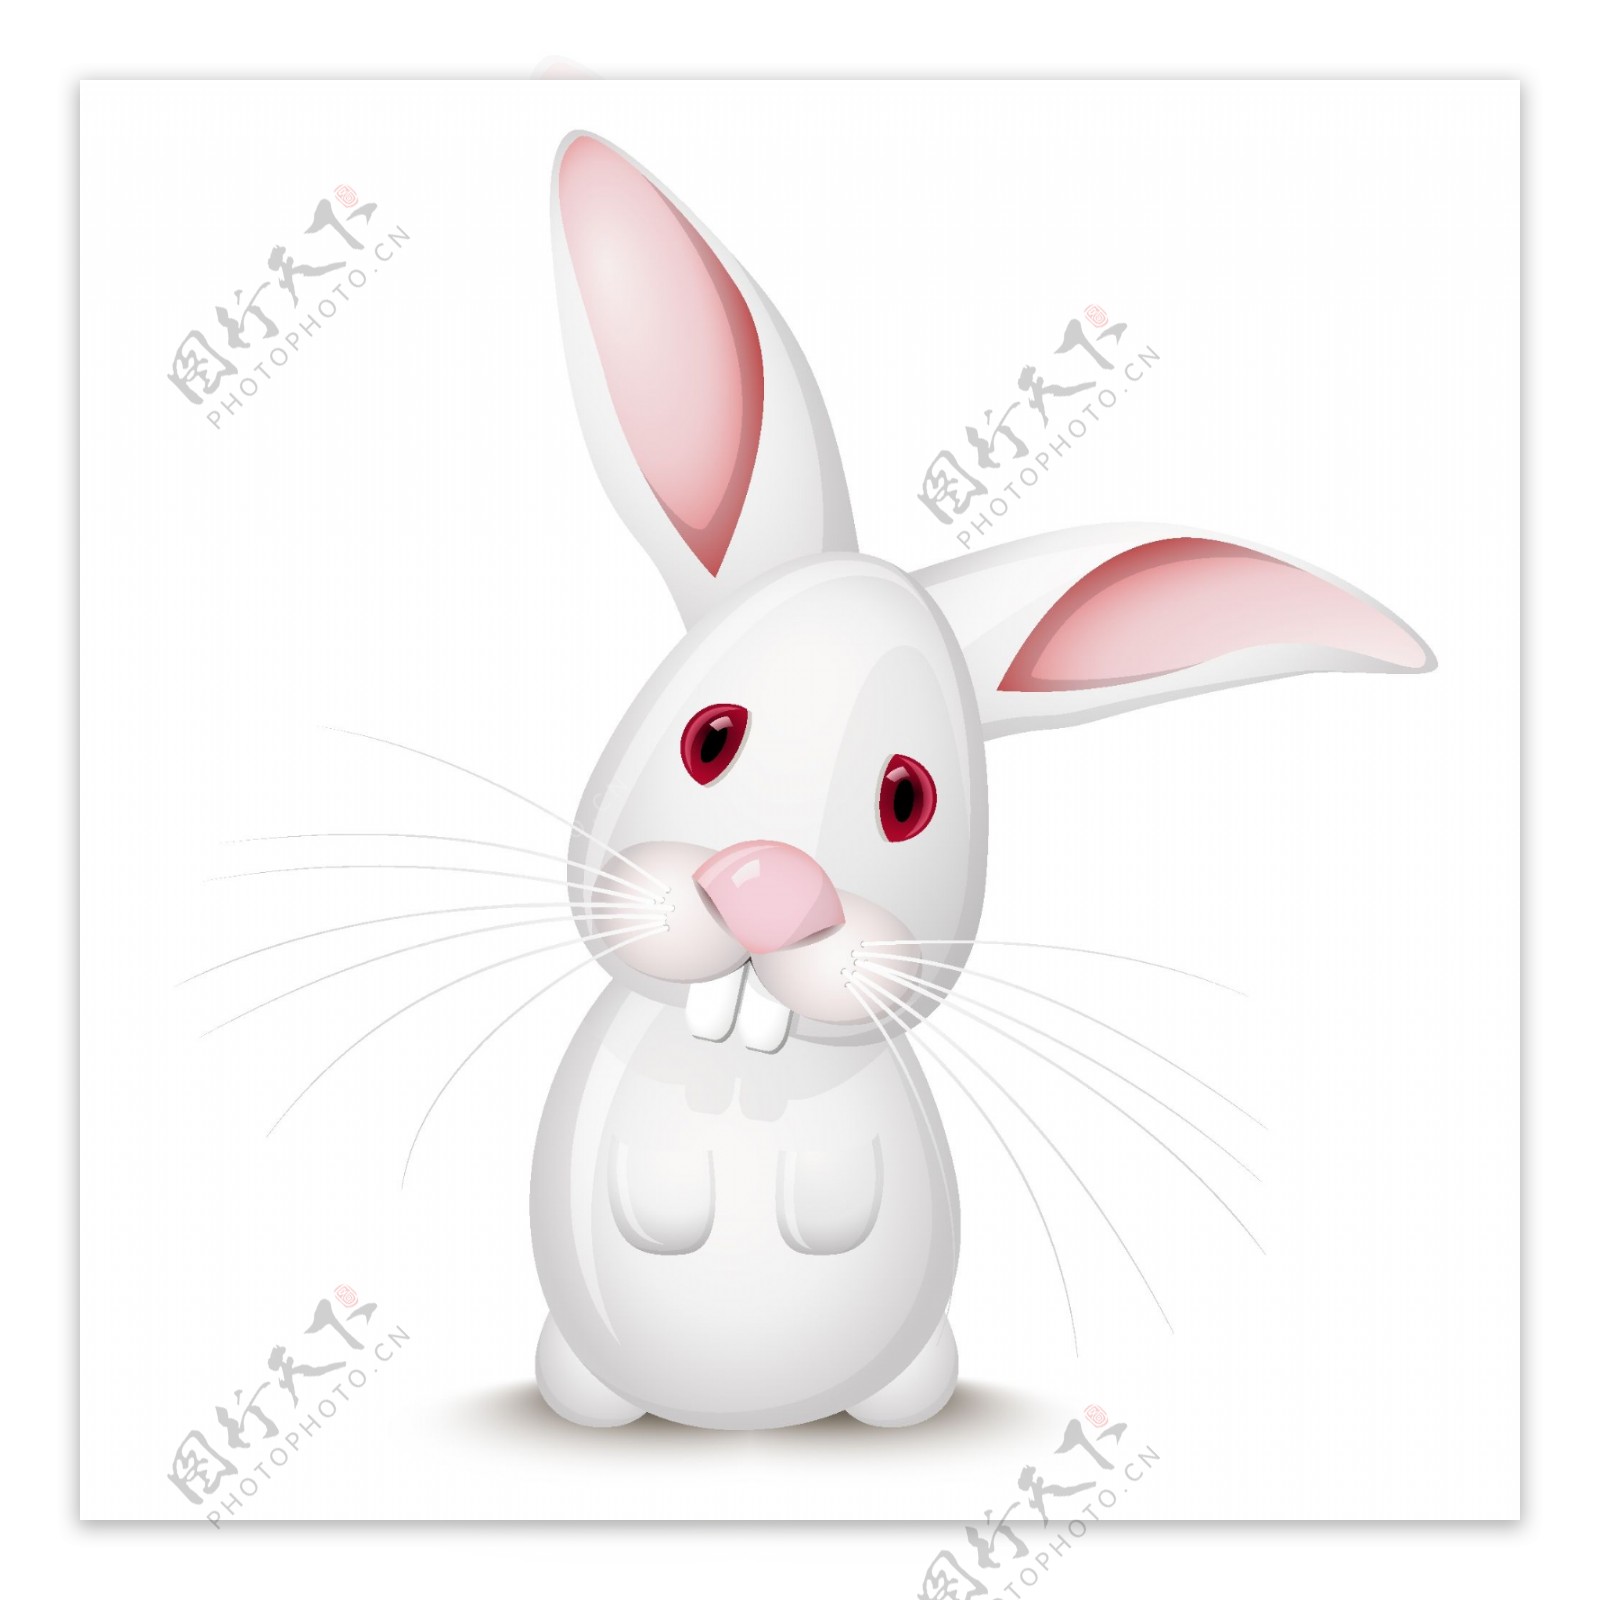 小灰兔与小白兔矢量素材